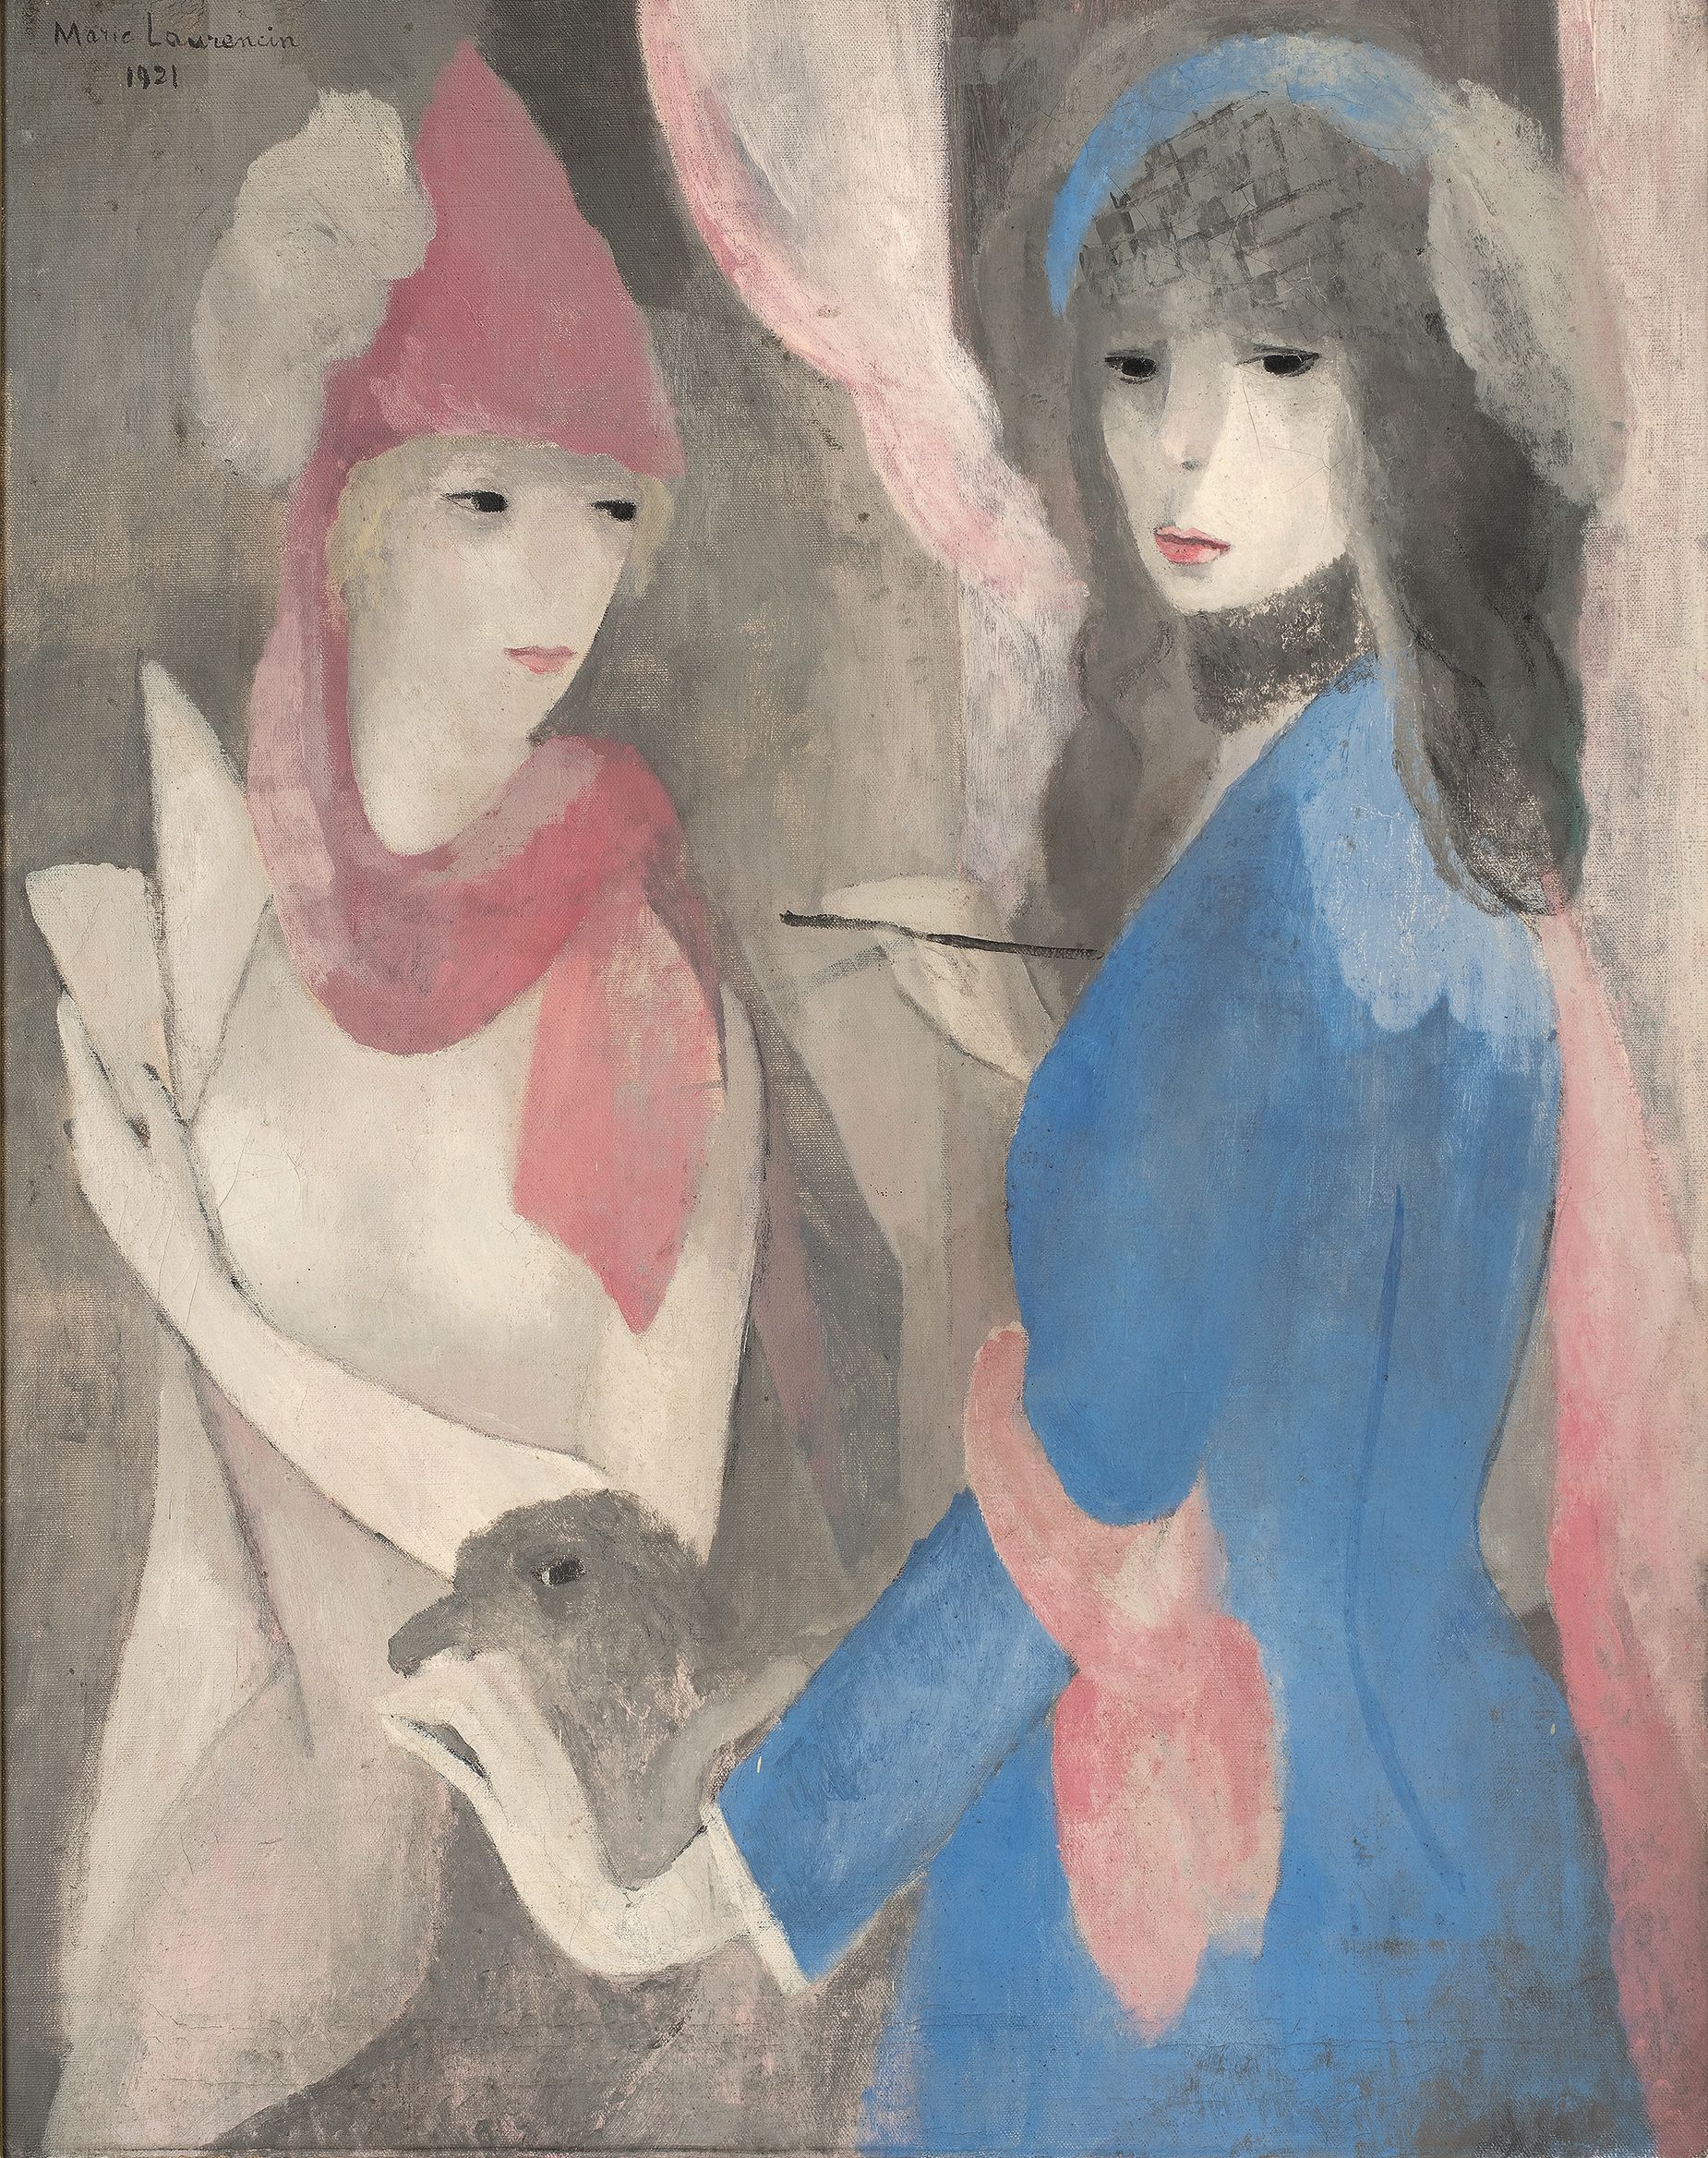 Woman Painter and Her Model (Femme
peintre et son modèle), 1921. François Odermatt Collection.